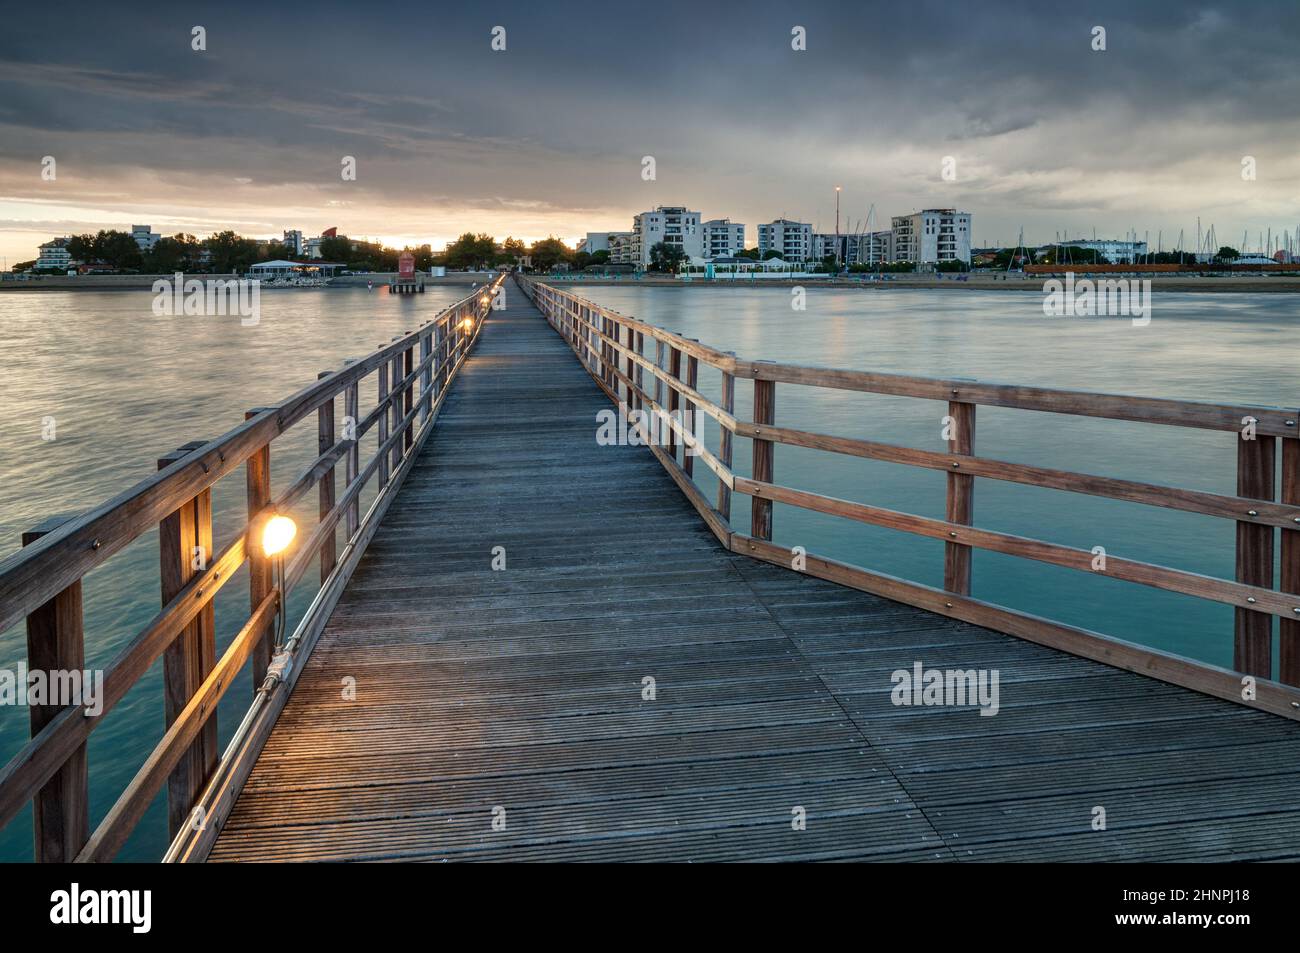 Looking at Lignano Sabbiadoro from wooden pier at sunset Stock Photo